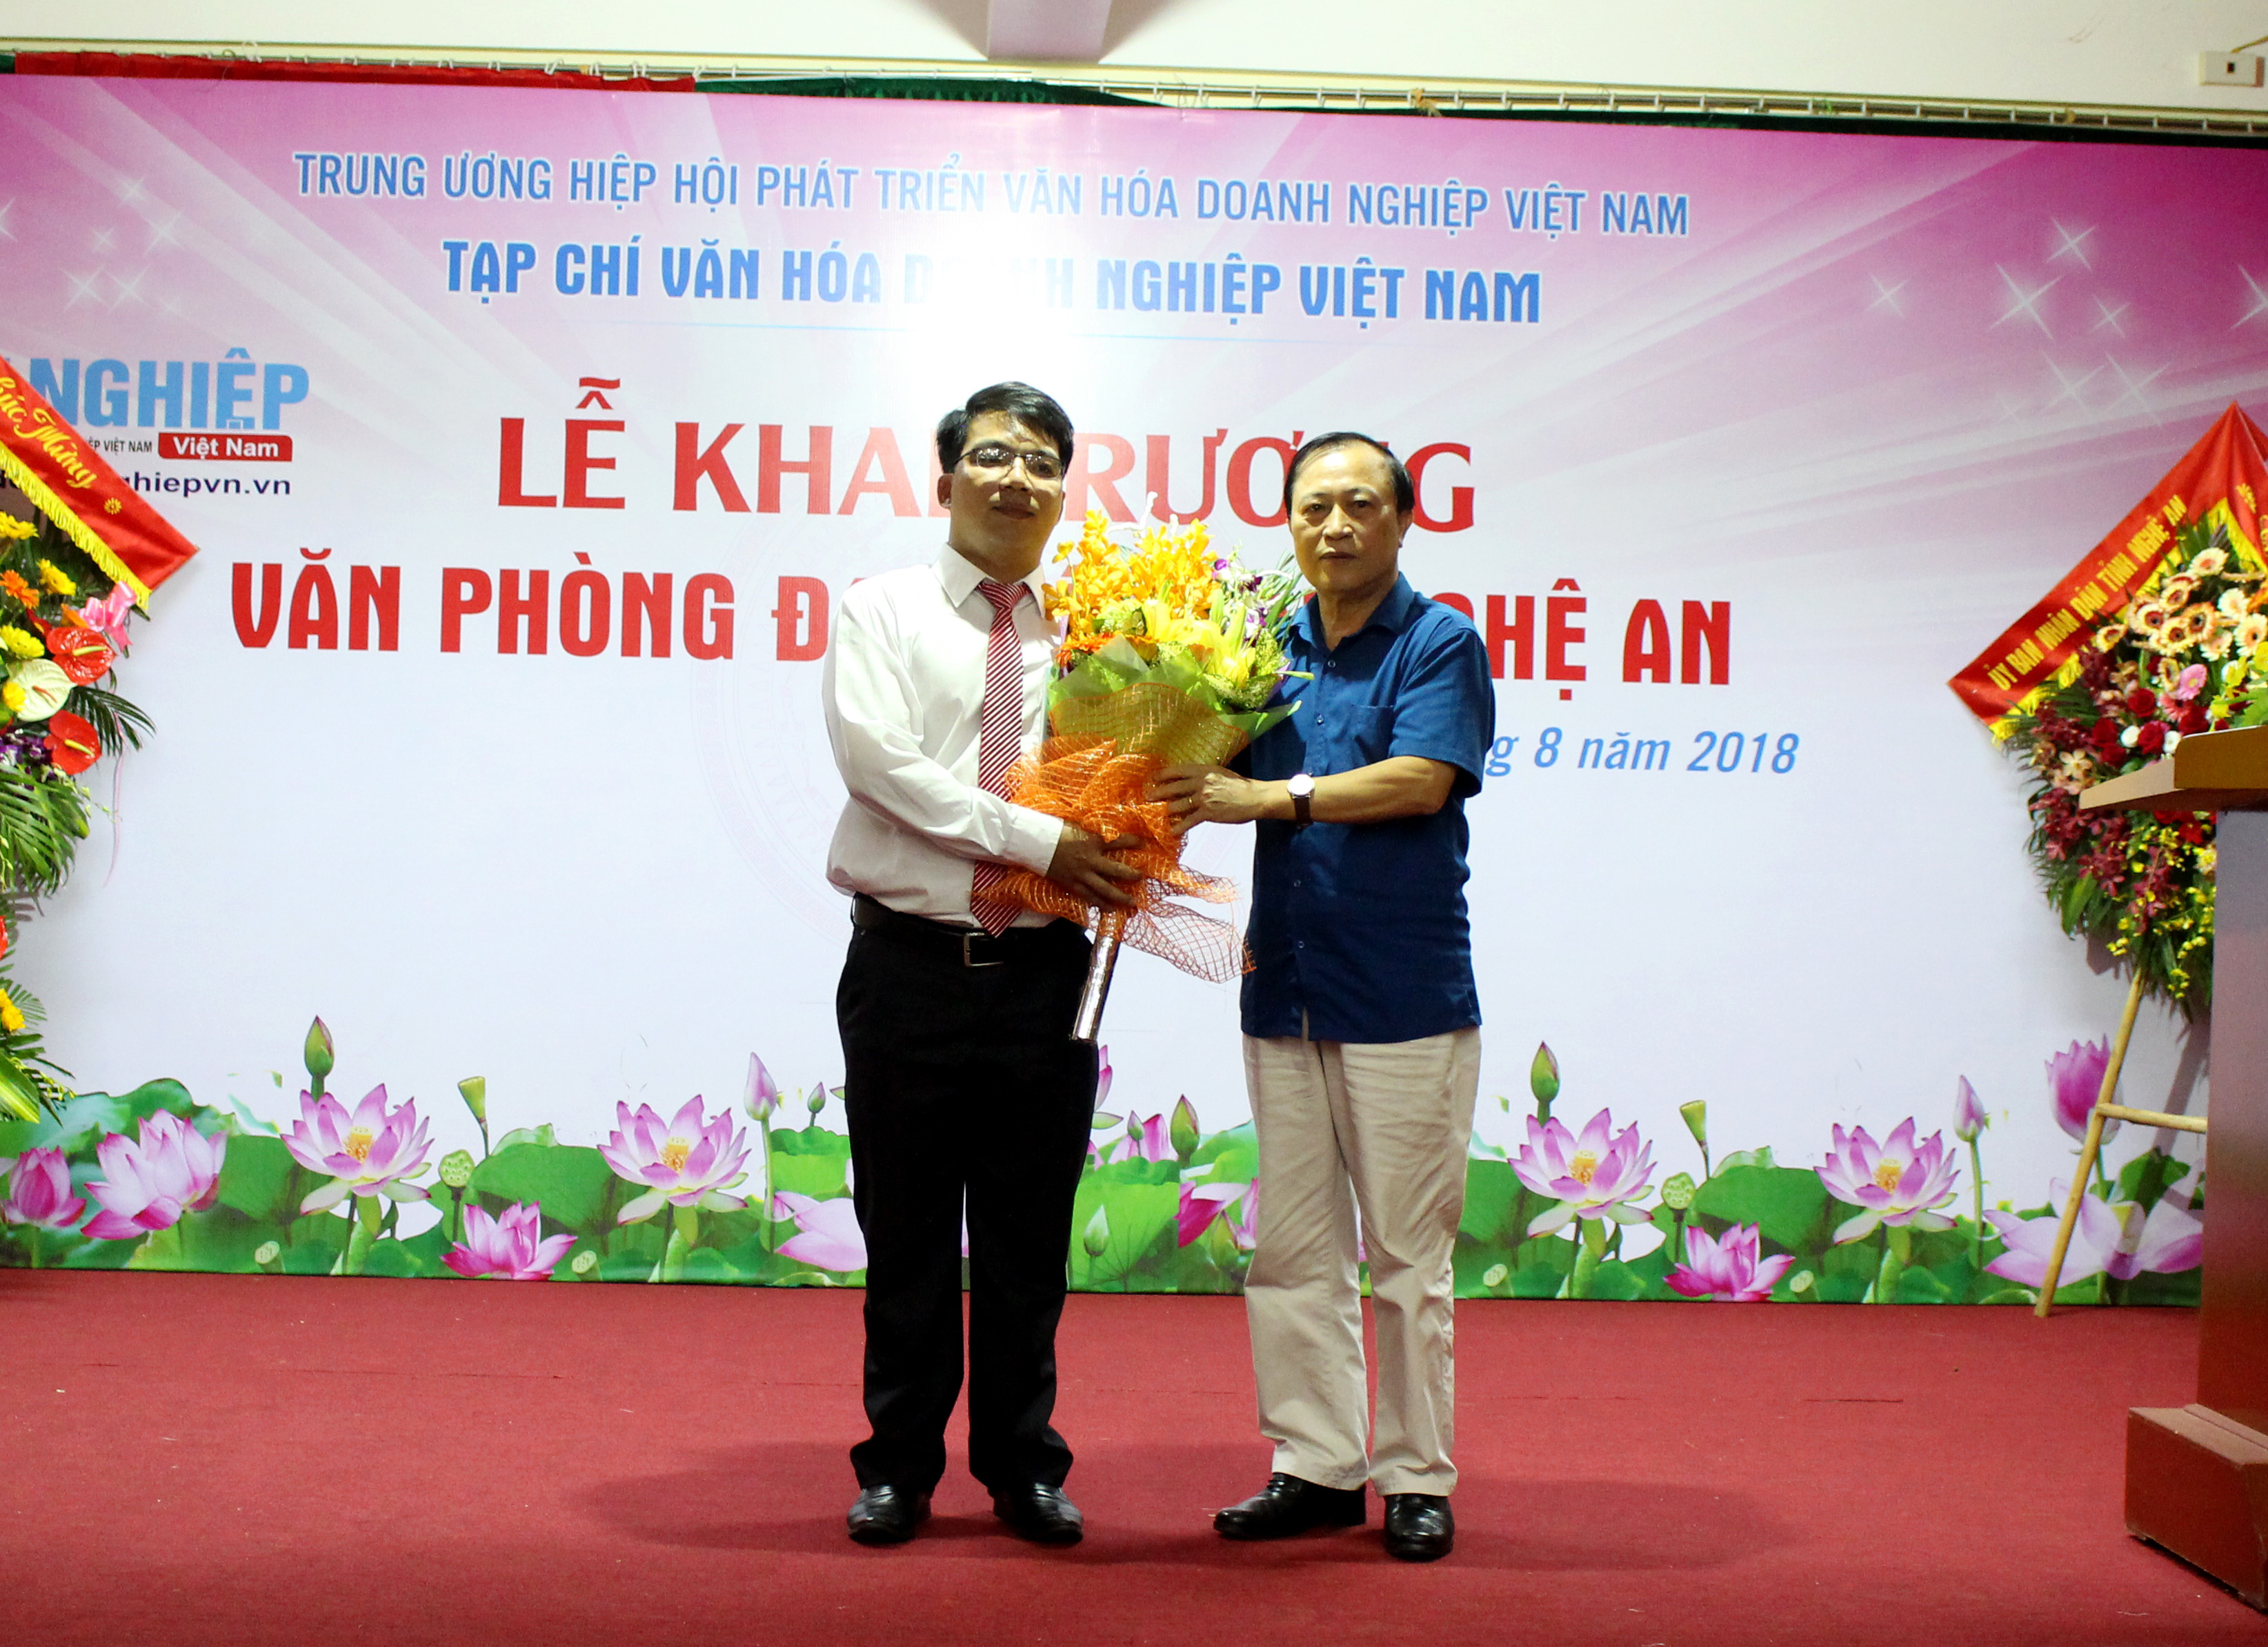 Trao quyết định bổ nhiệm trưởng Văn phòng đại diện Tạp chí Văn hóa doanh nghiệp Việt Nam tại Nghệ An. Ảnh: Nguyệt Minh